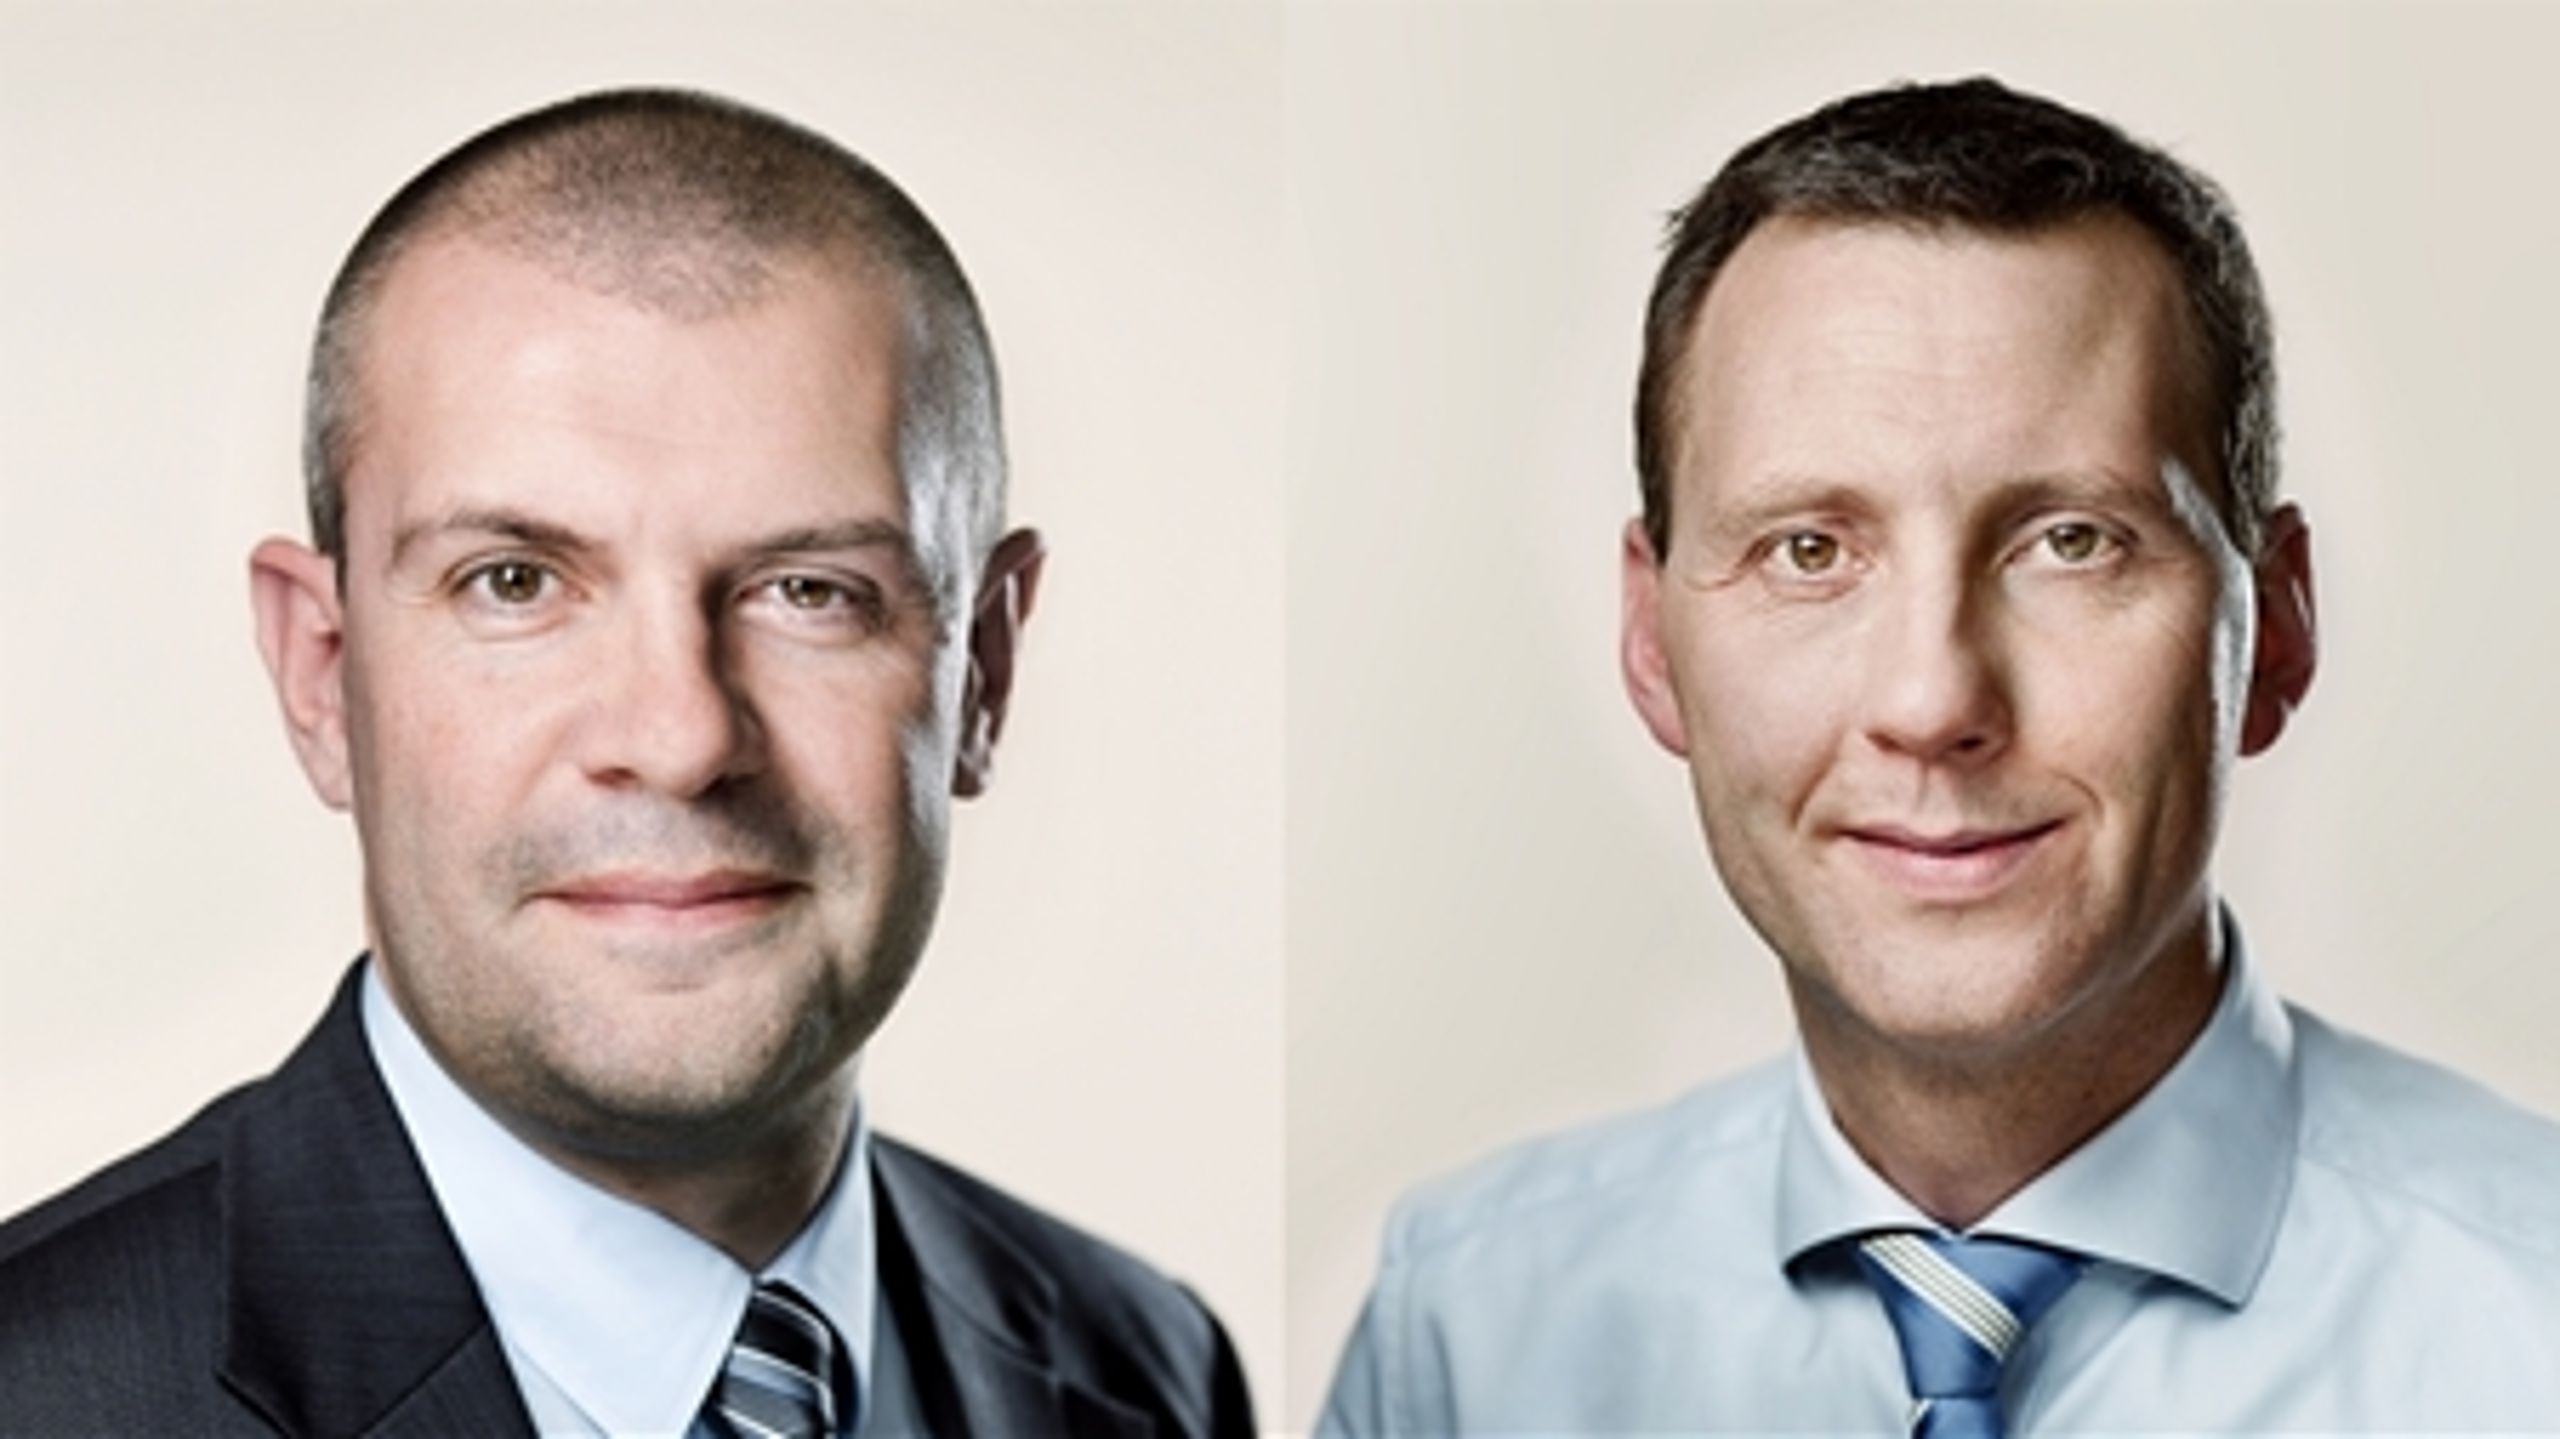 Finansminister Bjarne Corydon (S) og sundhedsminister Nick Hækkerup (S).